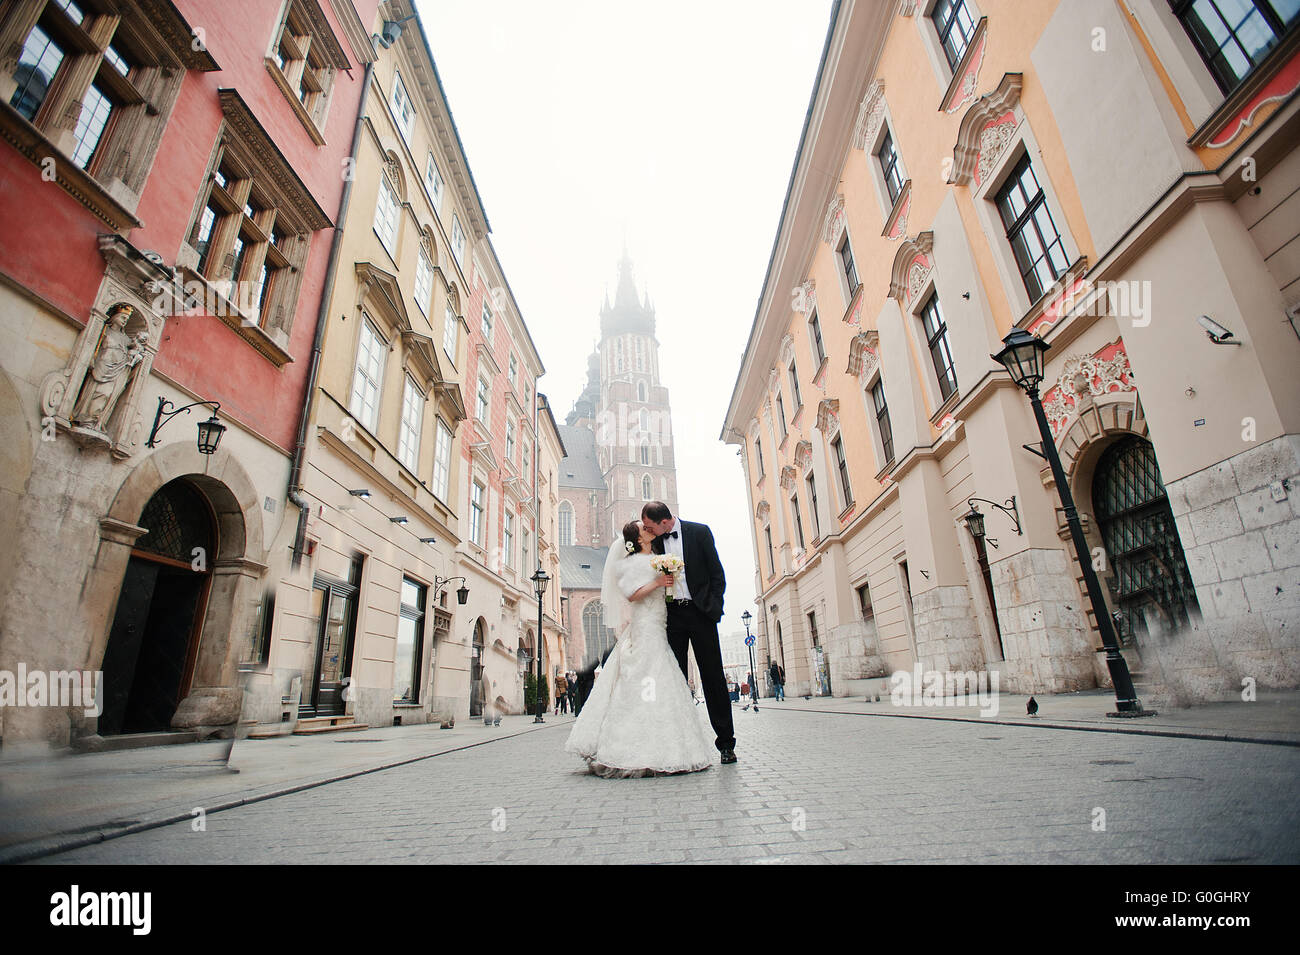 Giovane ed elegante e ricca sposi in amore sulle strade di Cracovia in Polonia Foto Stock